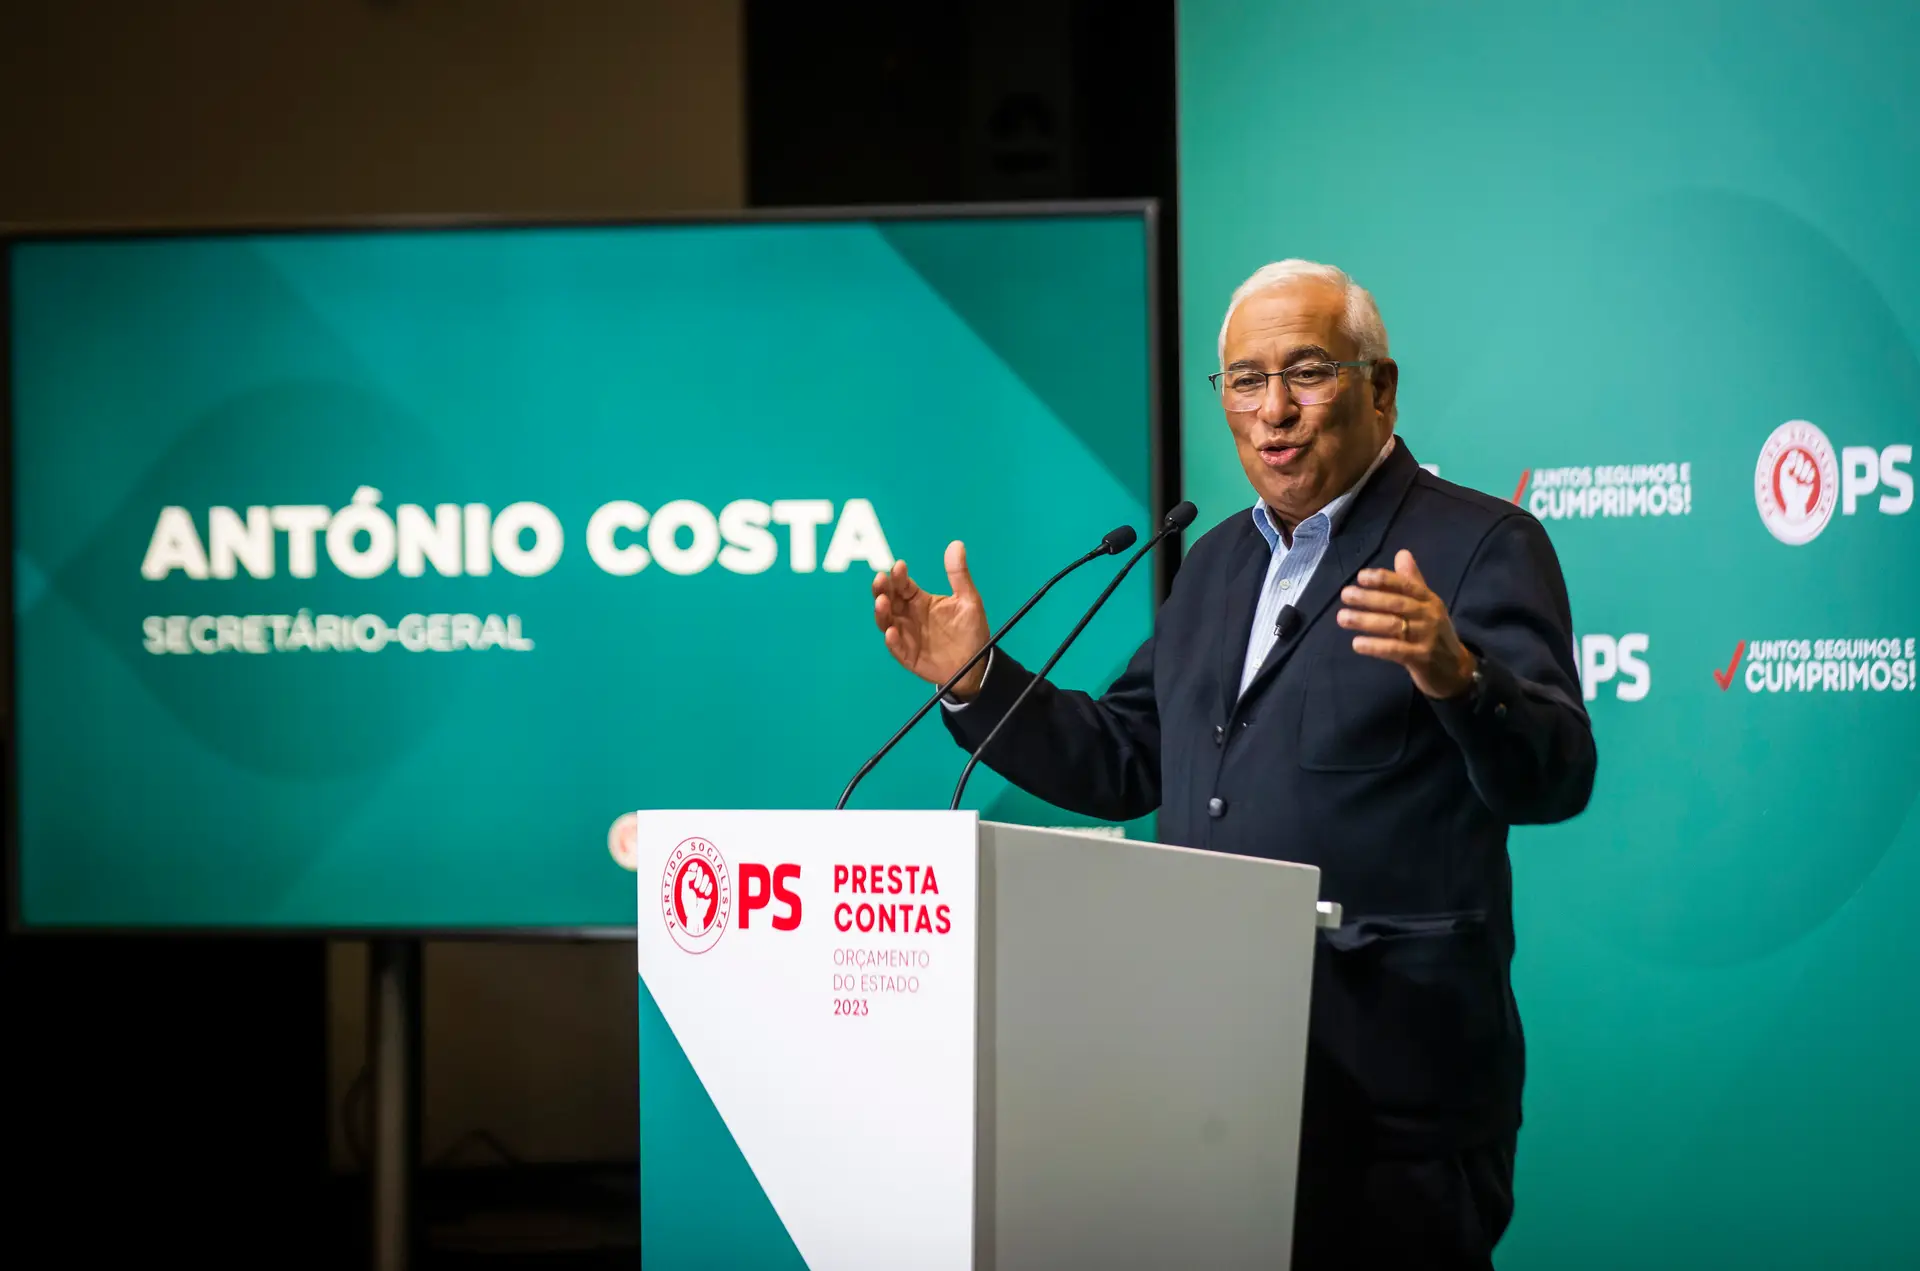 Costa explica legado que quer deixar em 11 anos de governação: emprego, recuperação de rendimentos e redução da dívida